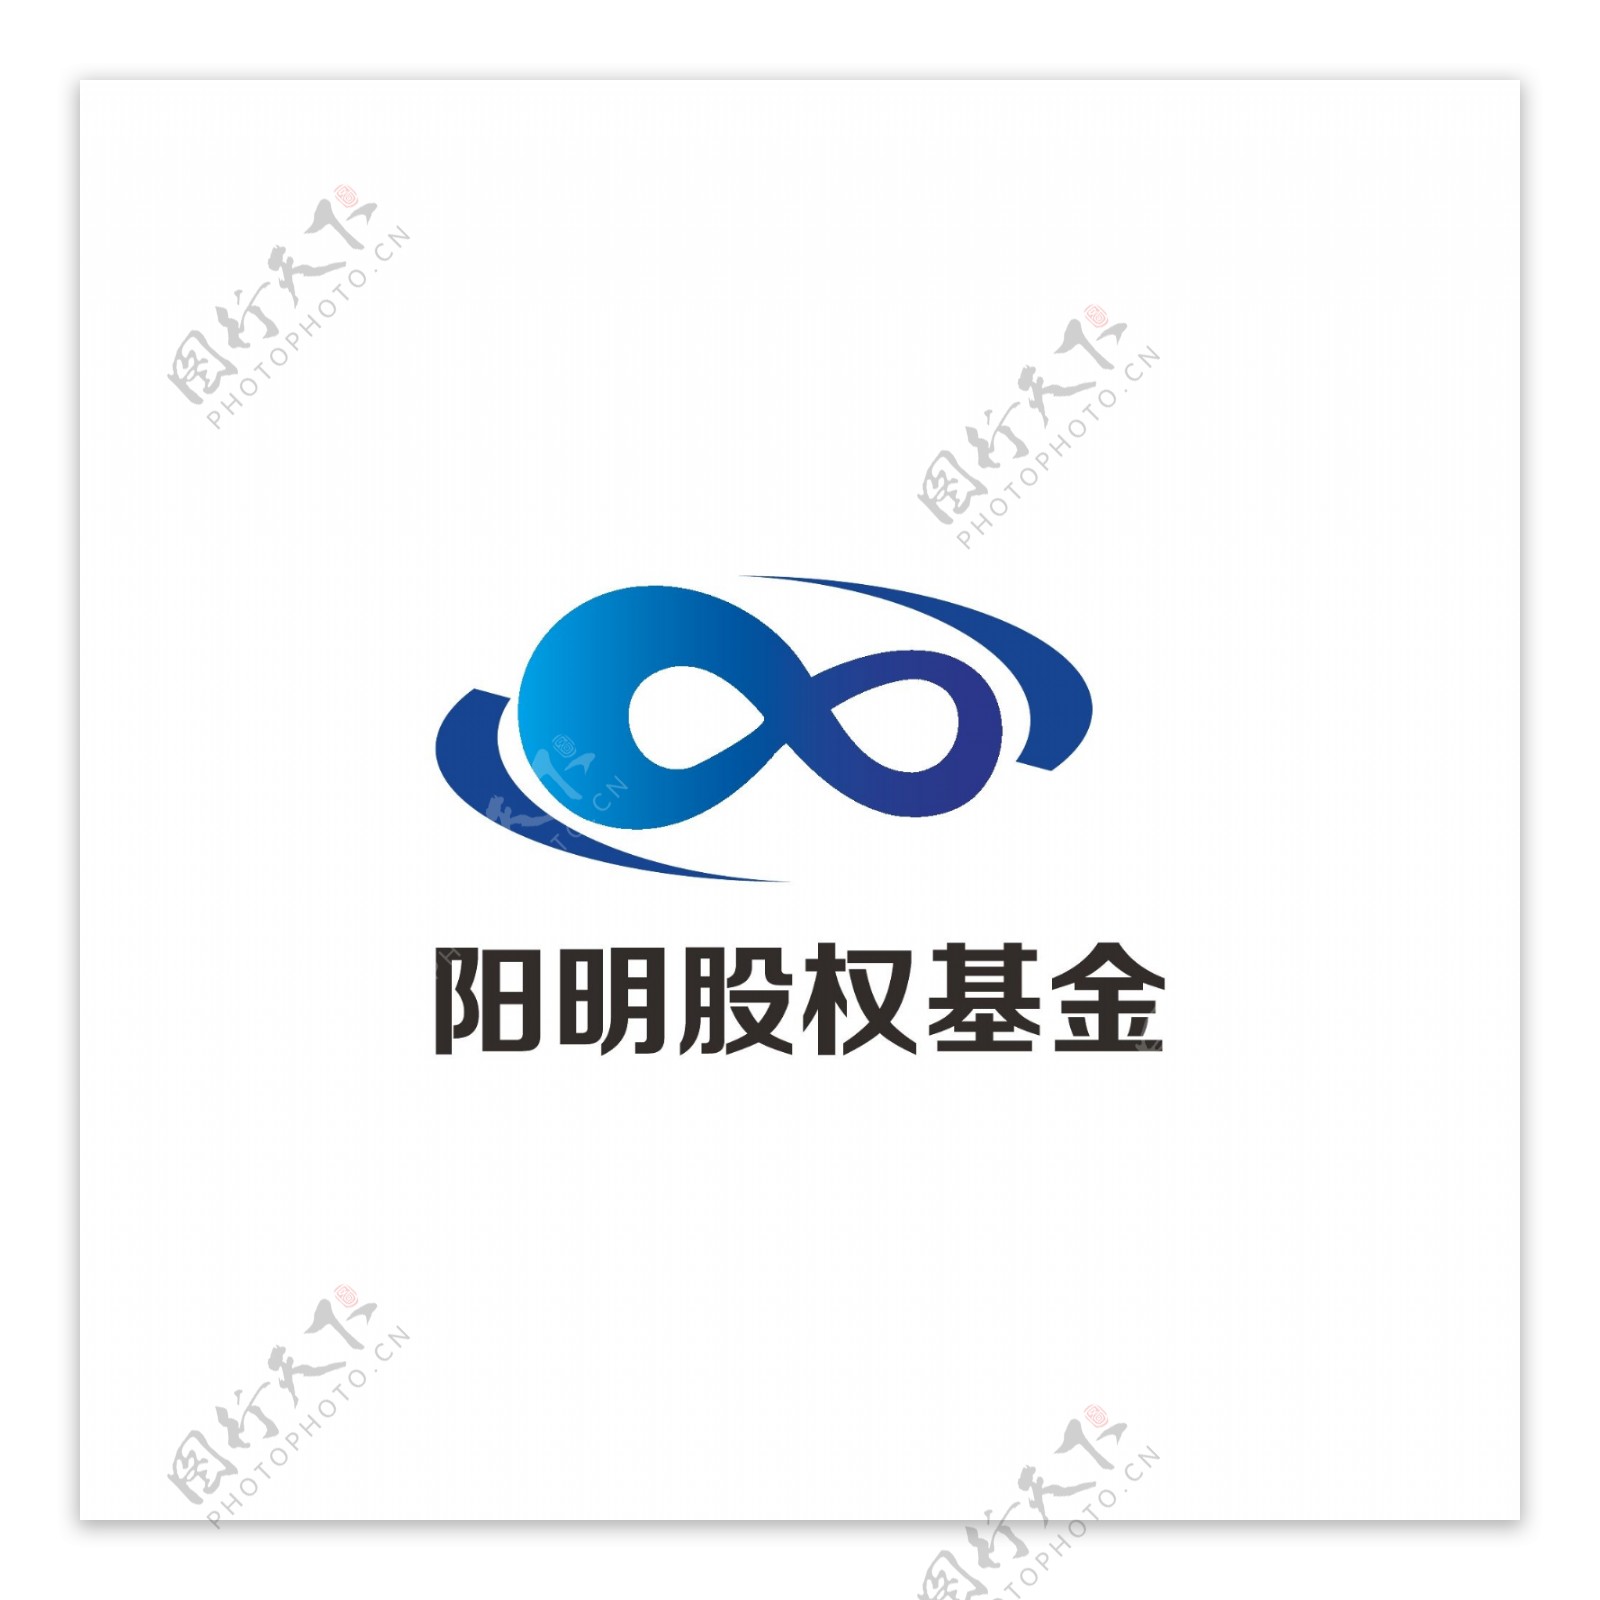 股权基金logo设计